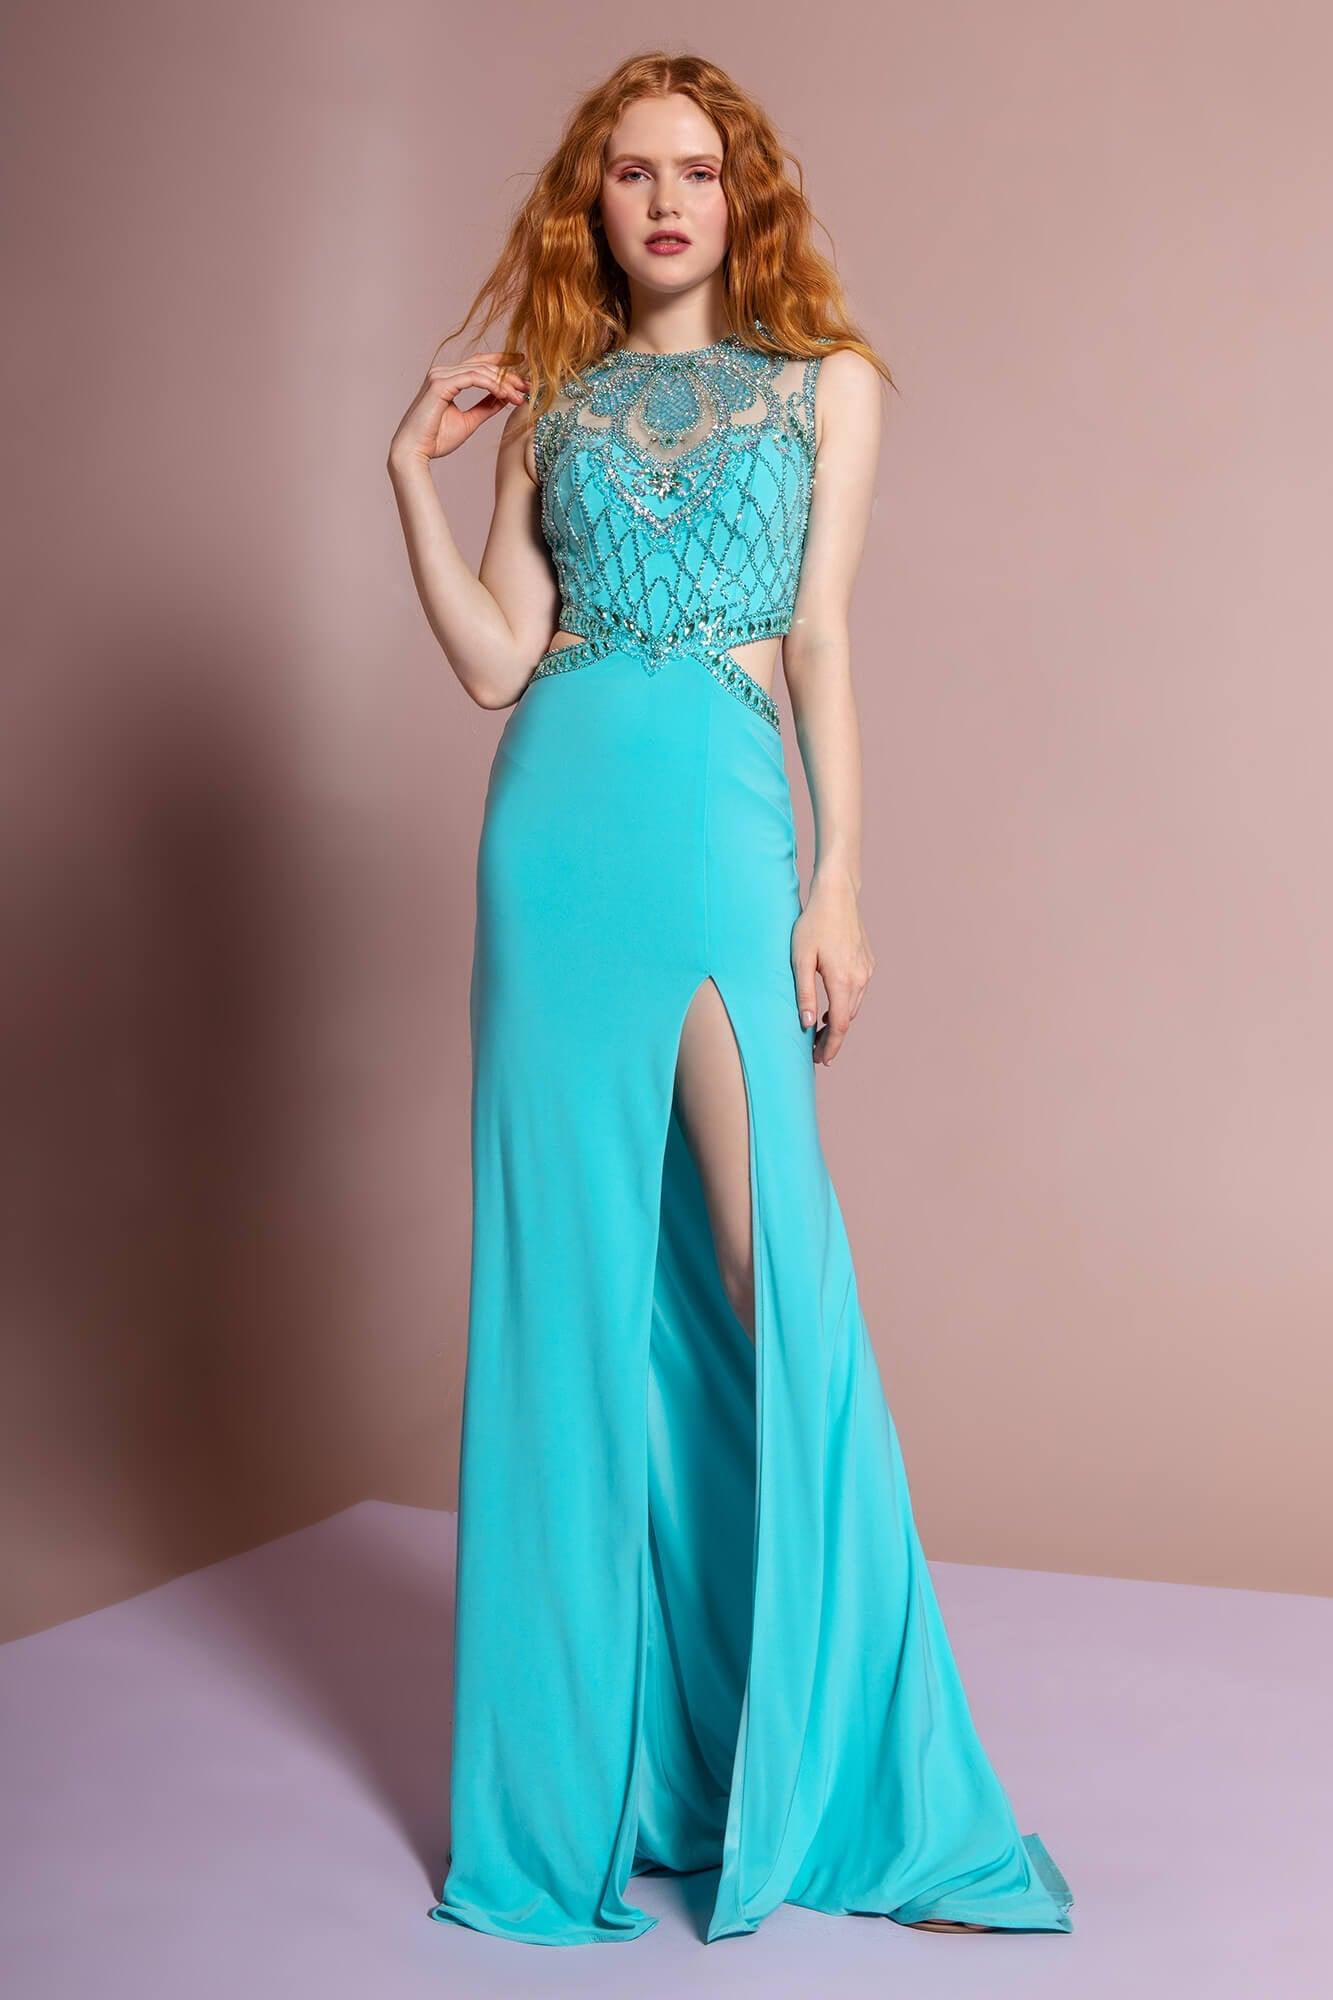 Long Formal Prom Dress Evening Gown with Side Slit - The Dress Outlet Elizabeth K